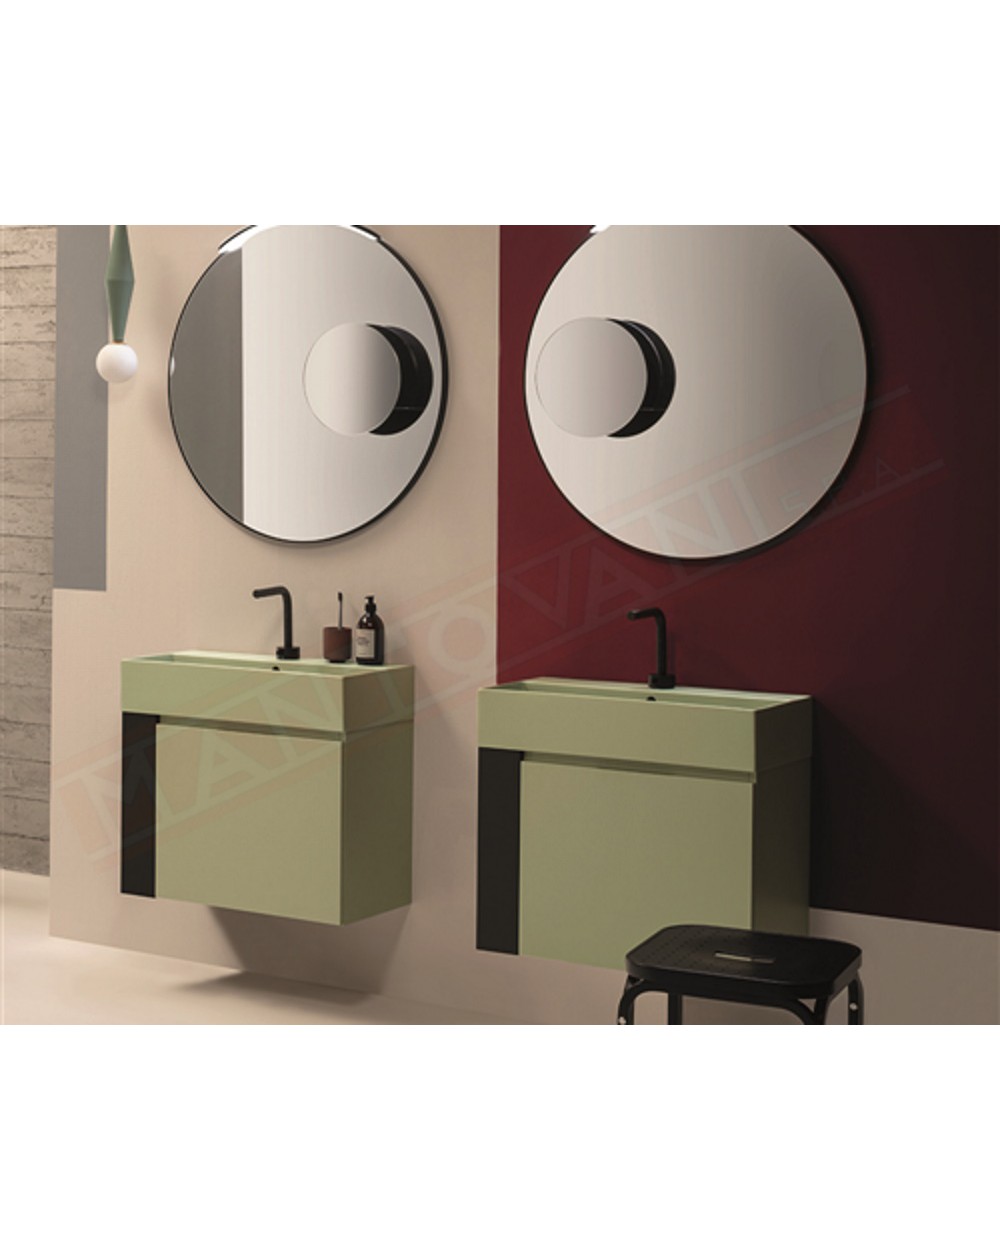 Globo portalavabo in metallo o mobile reversibile da completare con lavabi e accessori nei colori desiderati